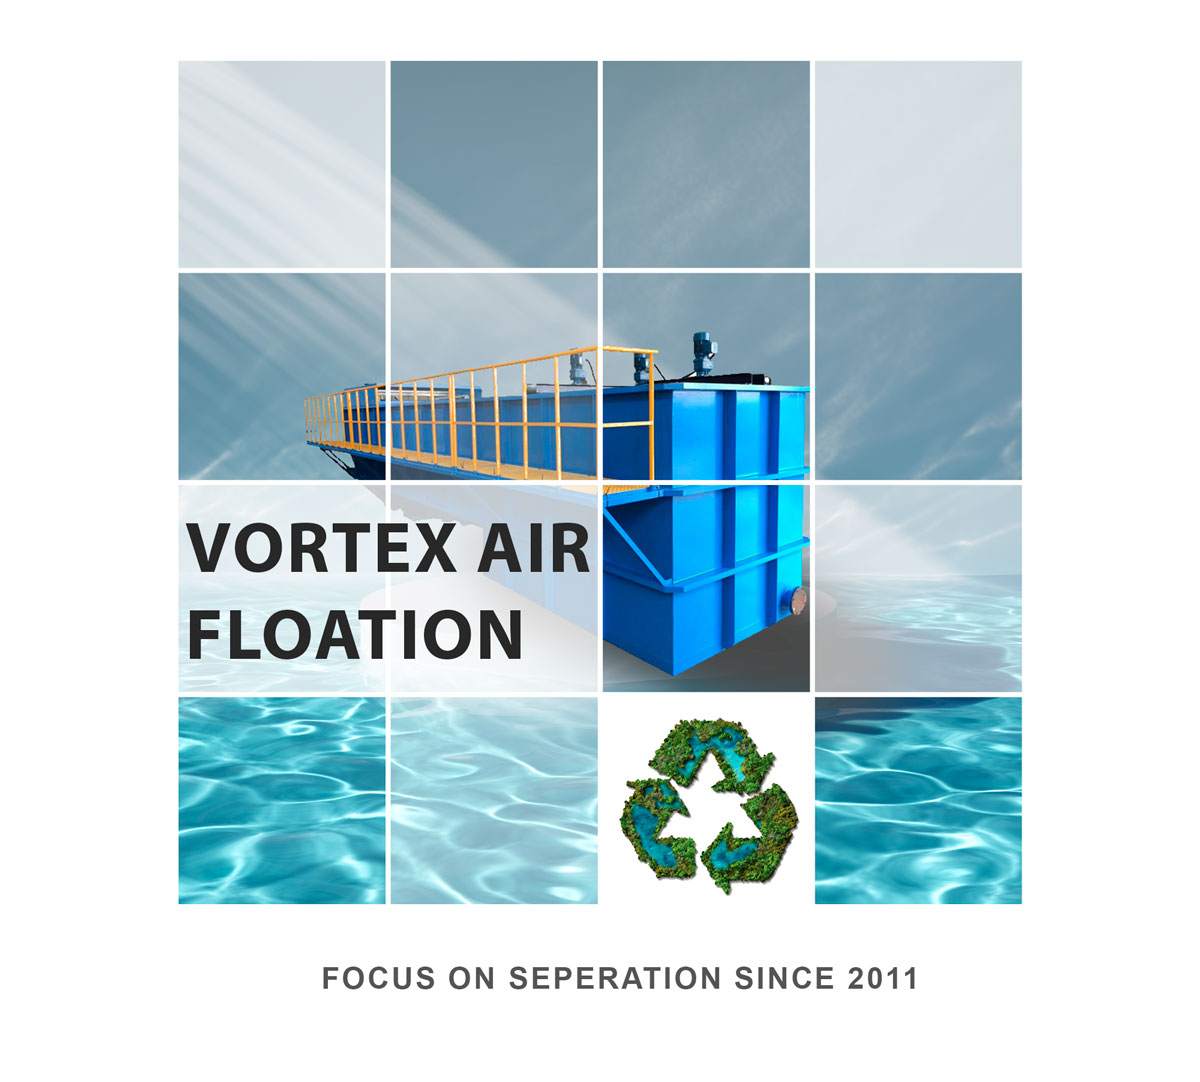 Vortex-air-flotation-first-picture